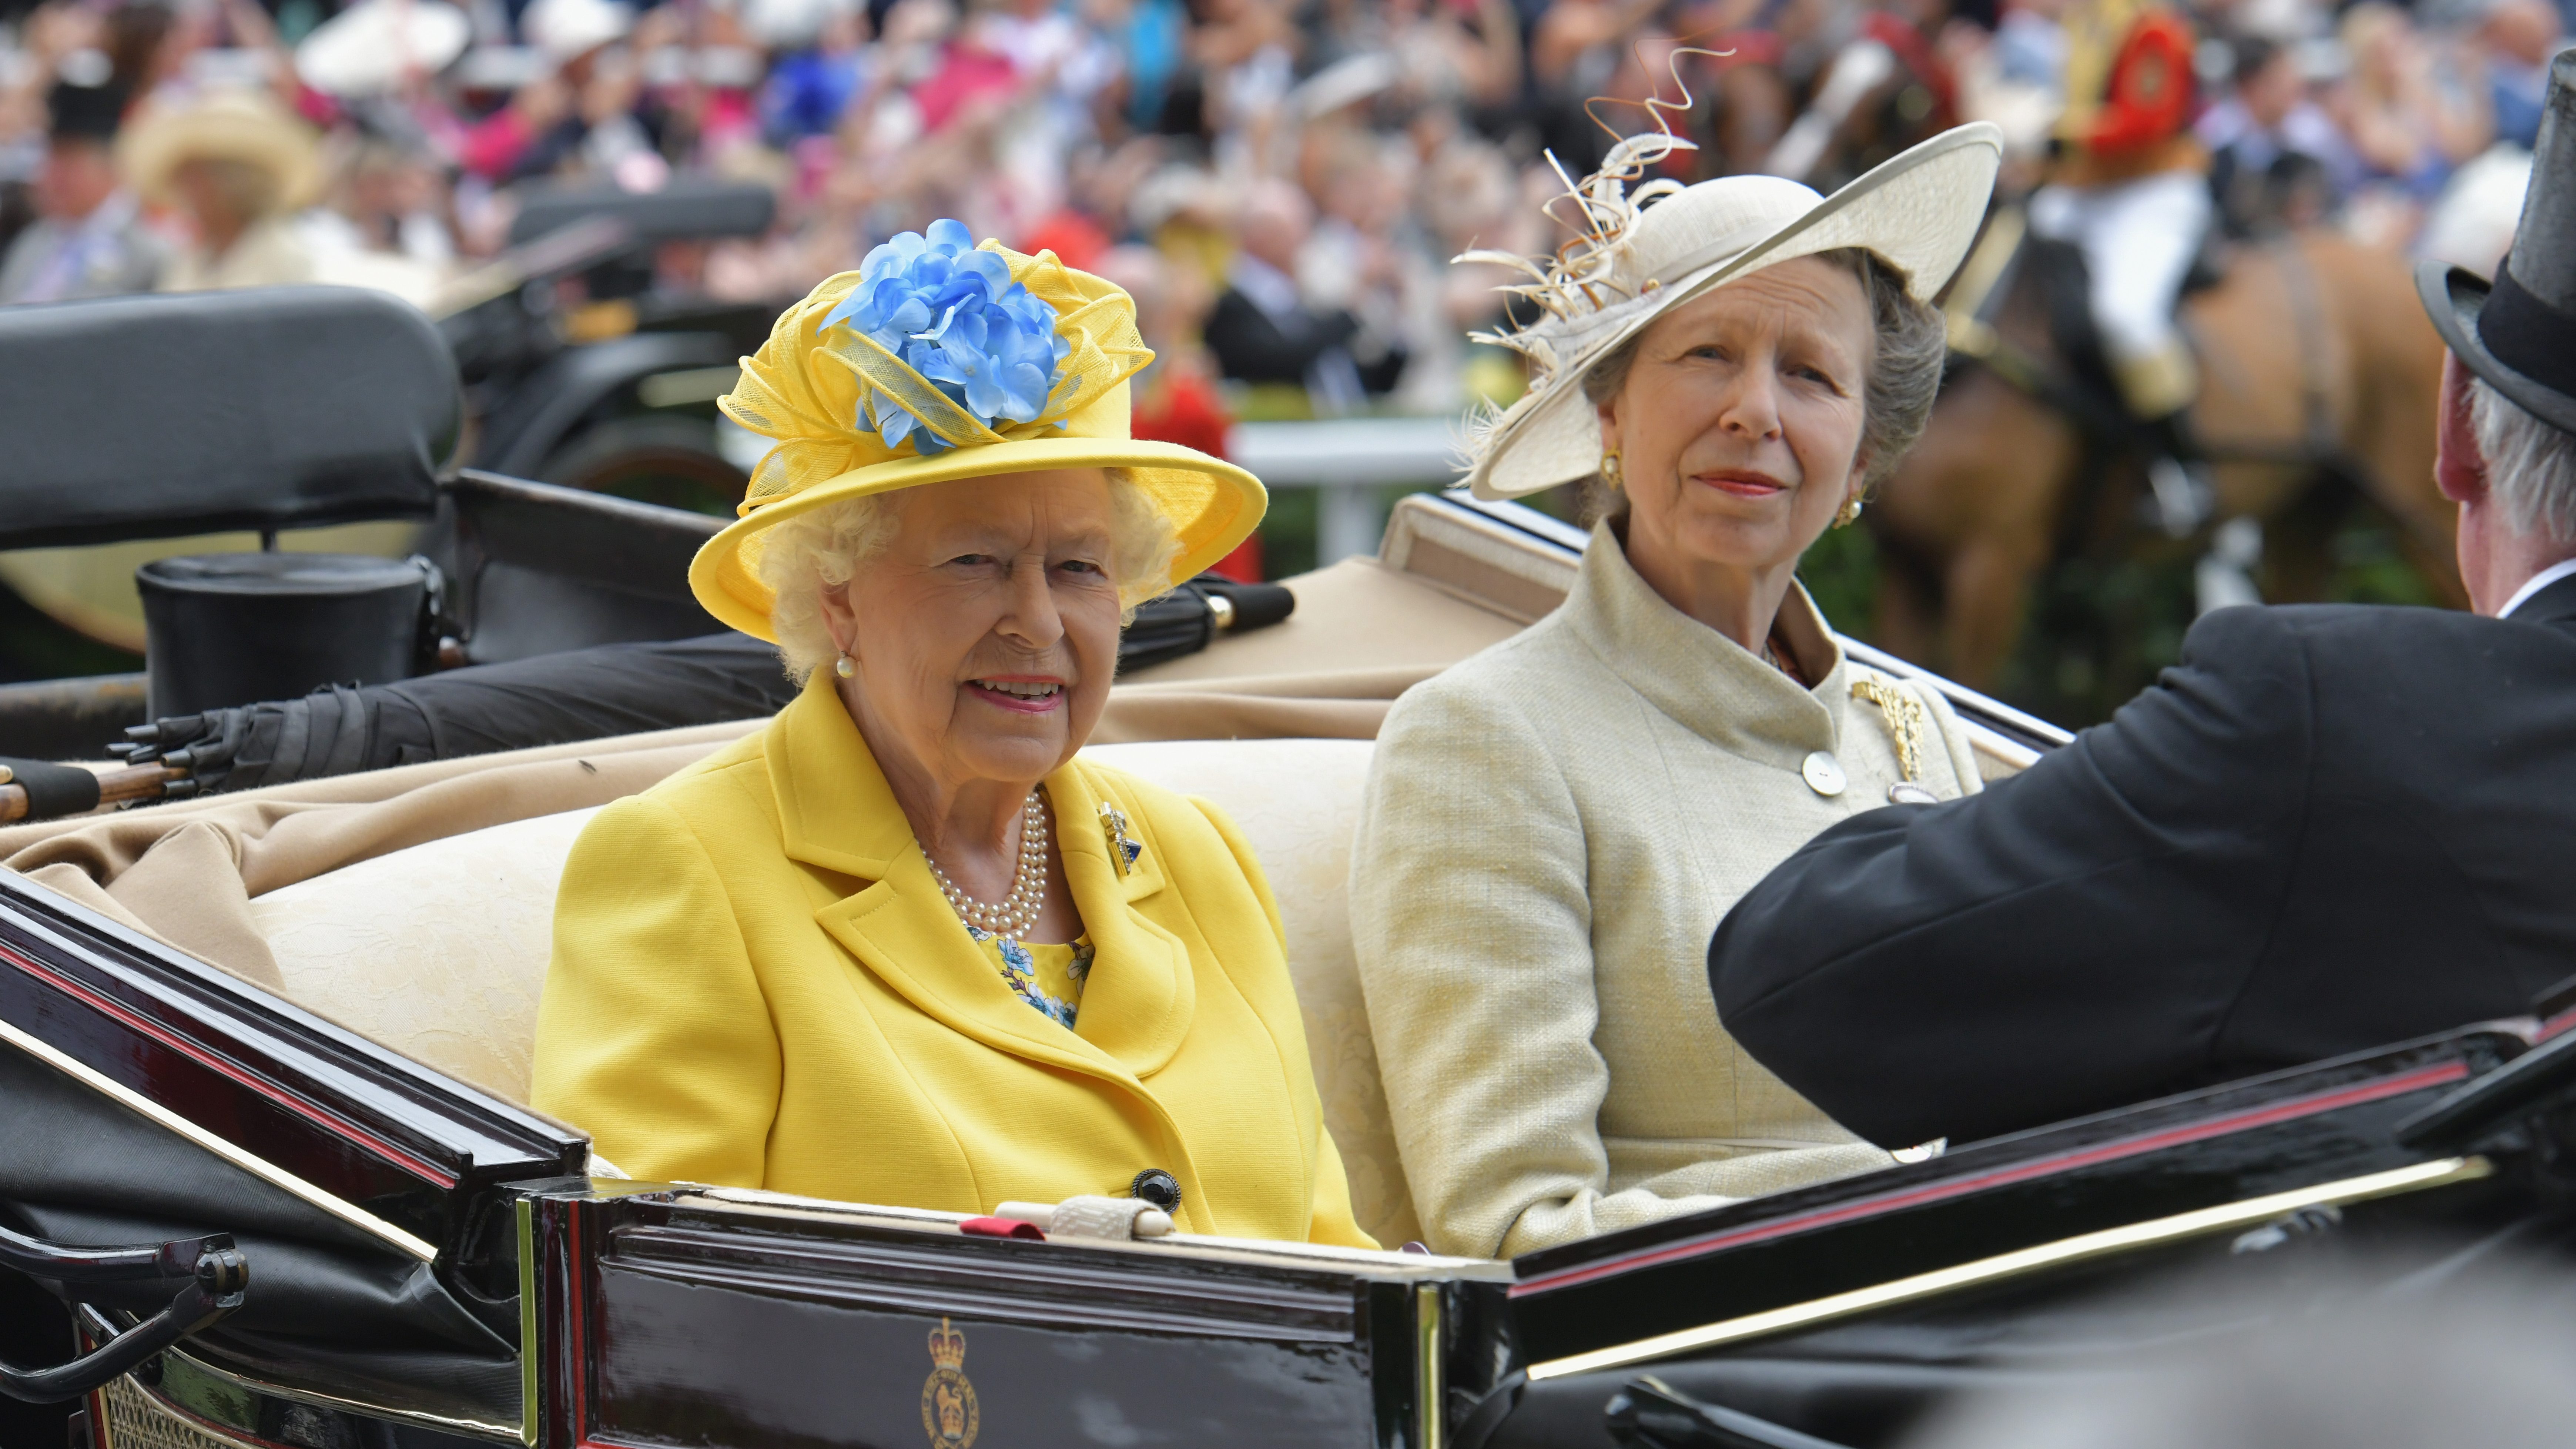 Anna hercegnő II. Erzsébetről: Megtiszteltetés és kiváltság volt, hogy elkísérhettem az végső útjára